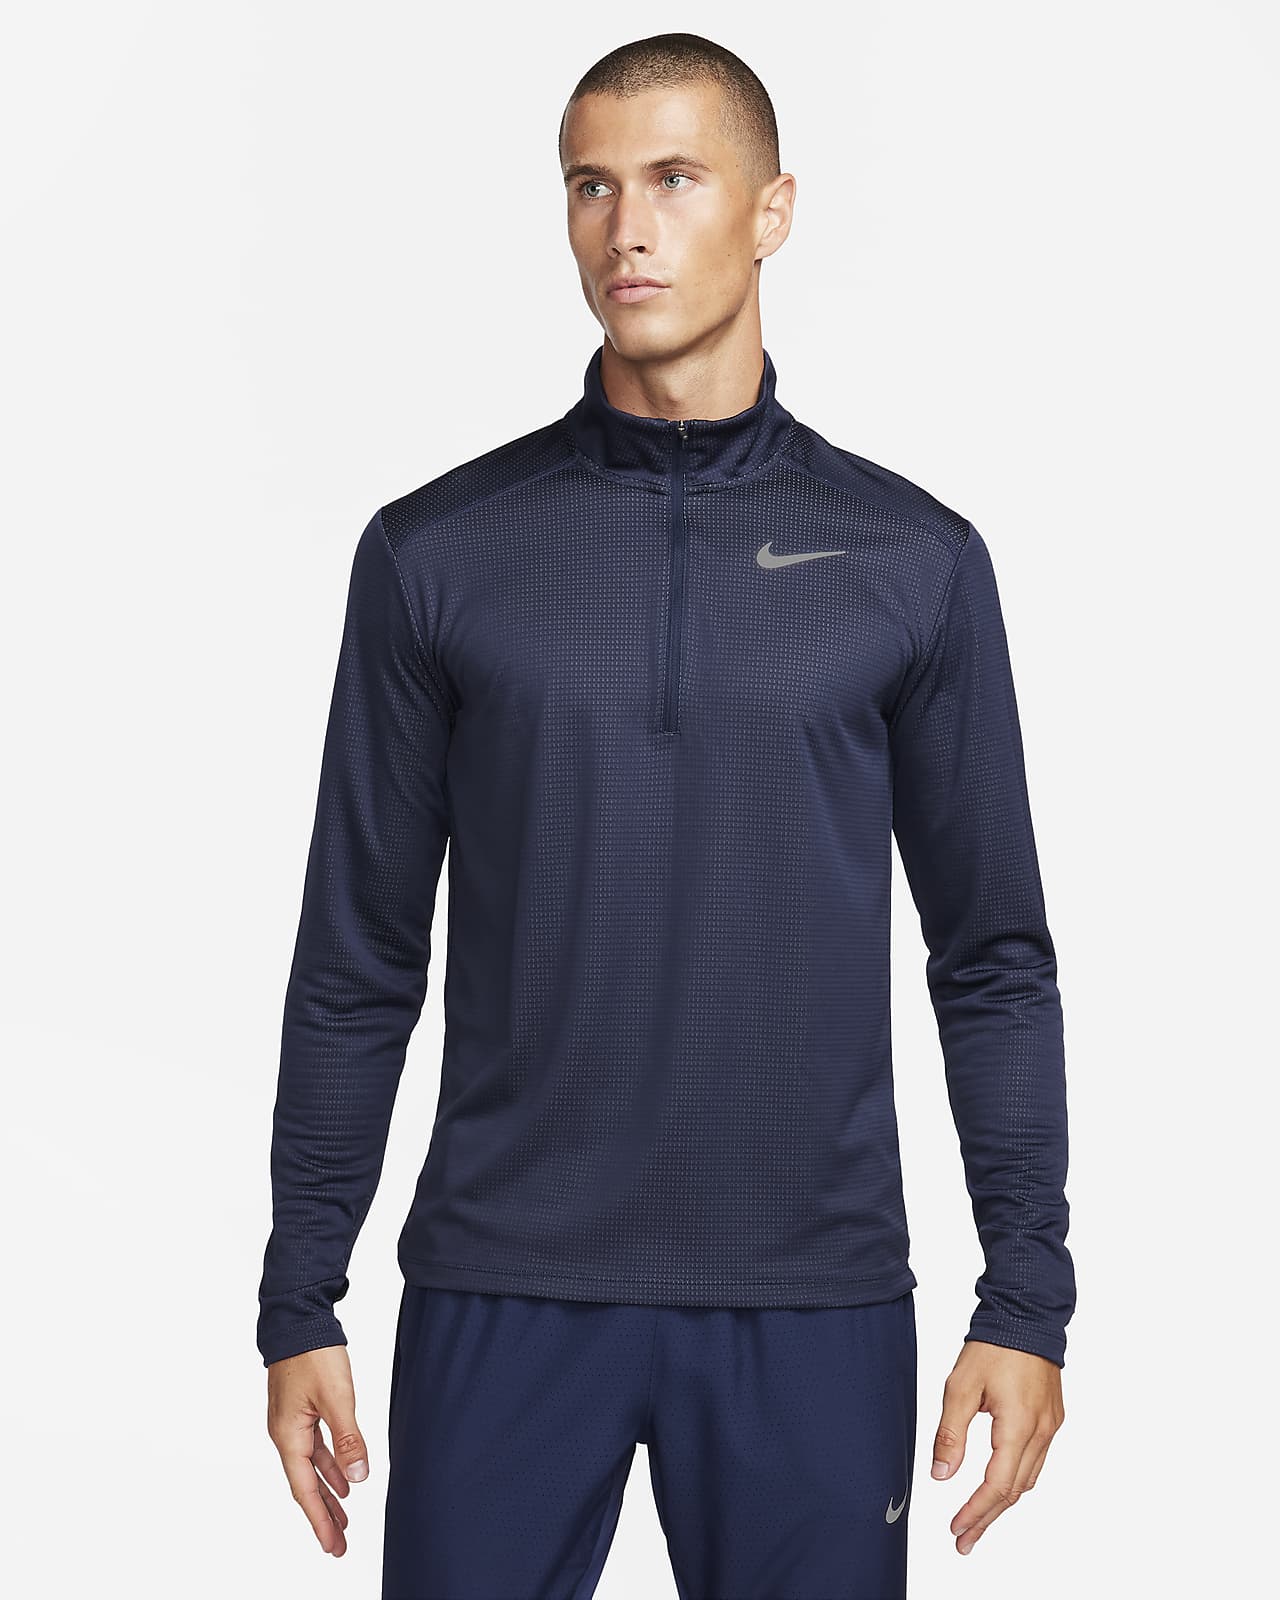 Nike Pacer Yarım Fermuarlı Erkek Koşu Üstü